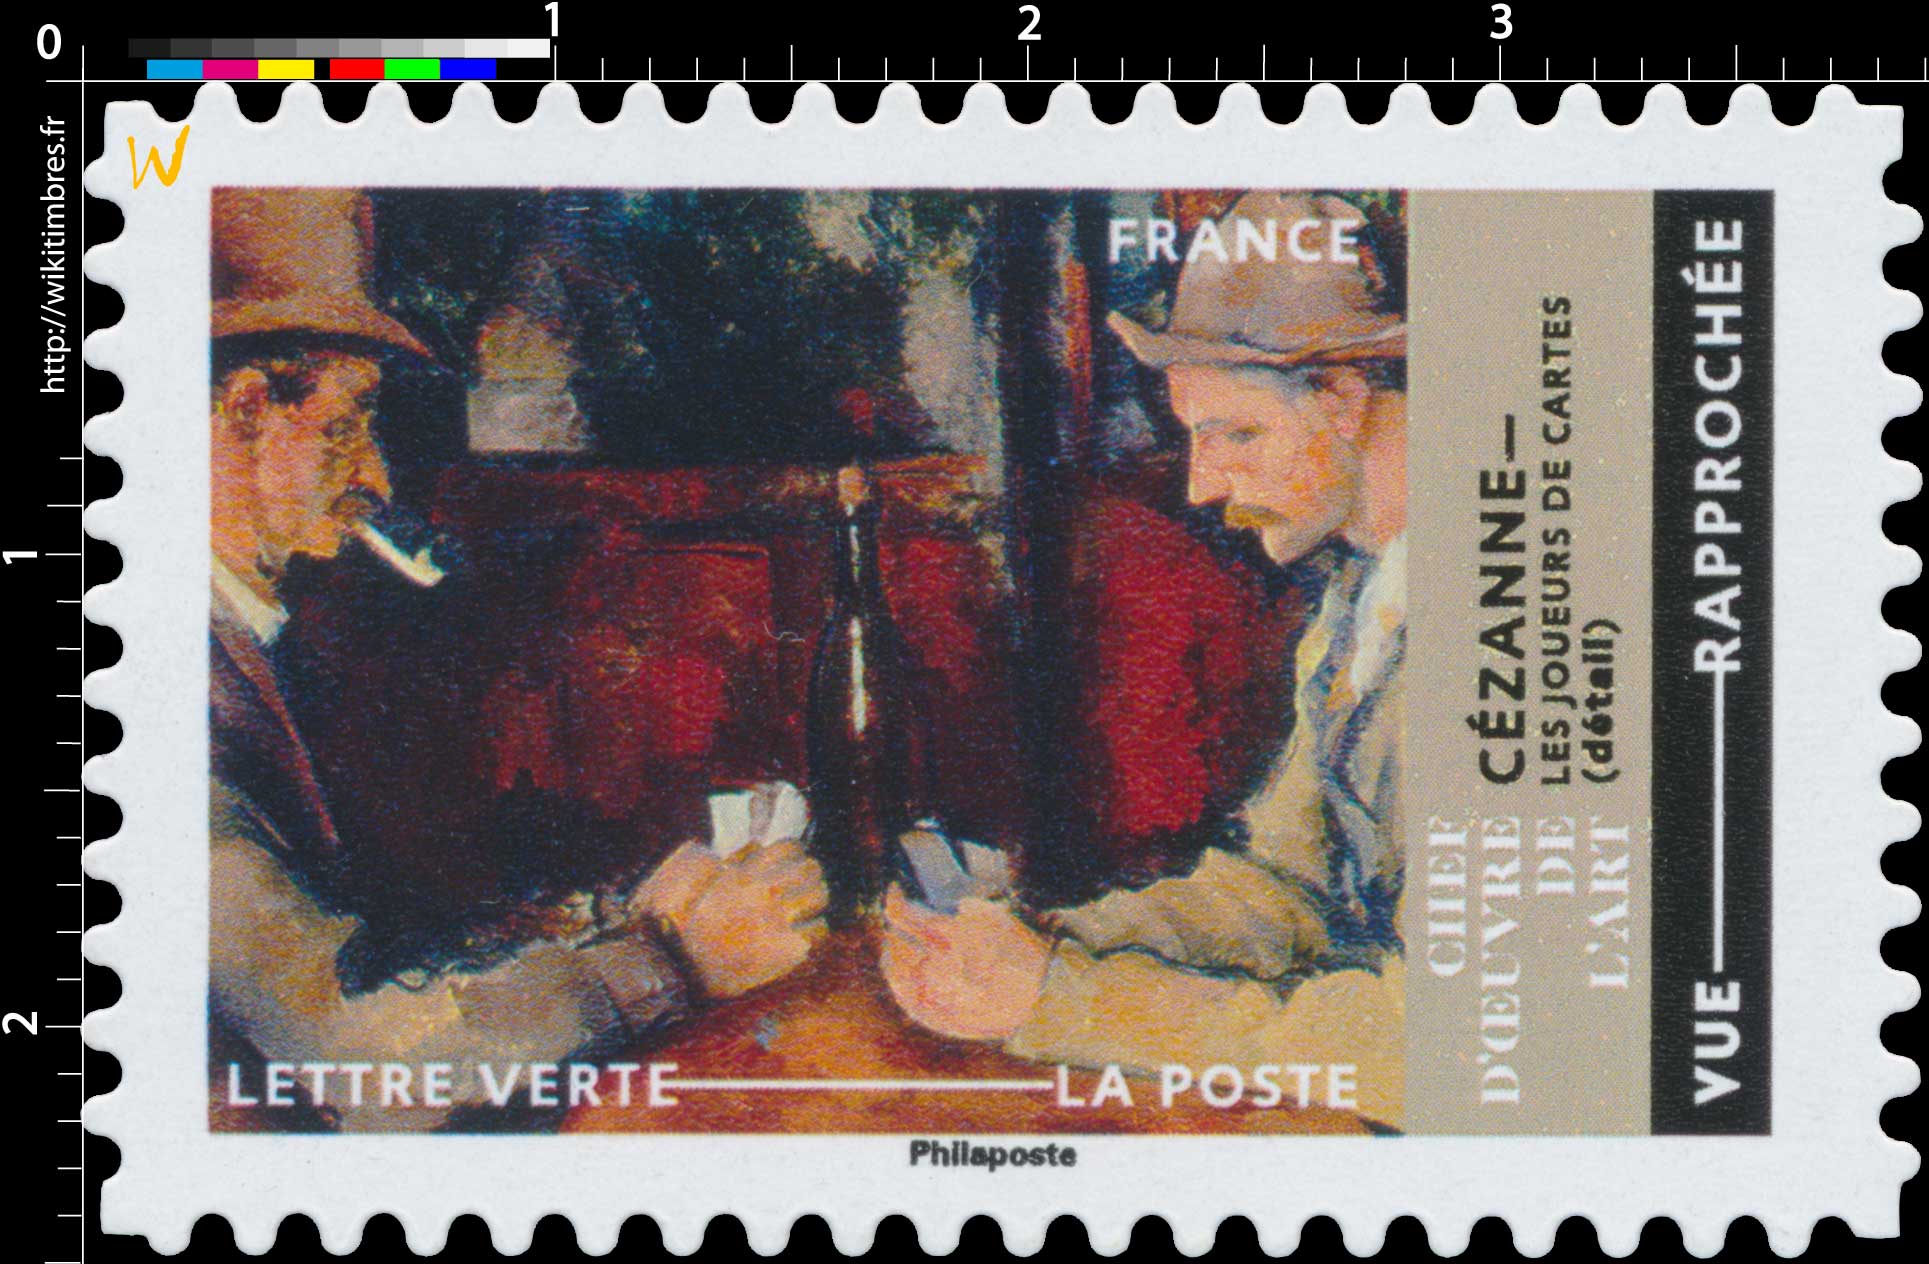 2022 CHEFS-D’OEUVRE DE L’ART - Paul Cézanne Les joueurs de cartes (détail)